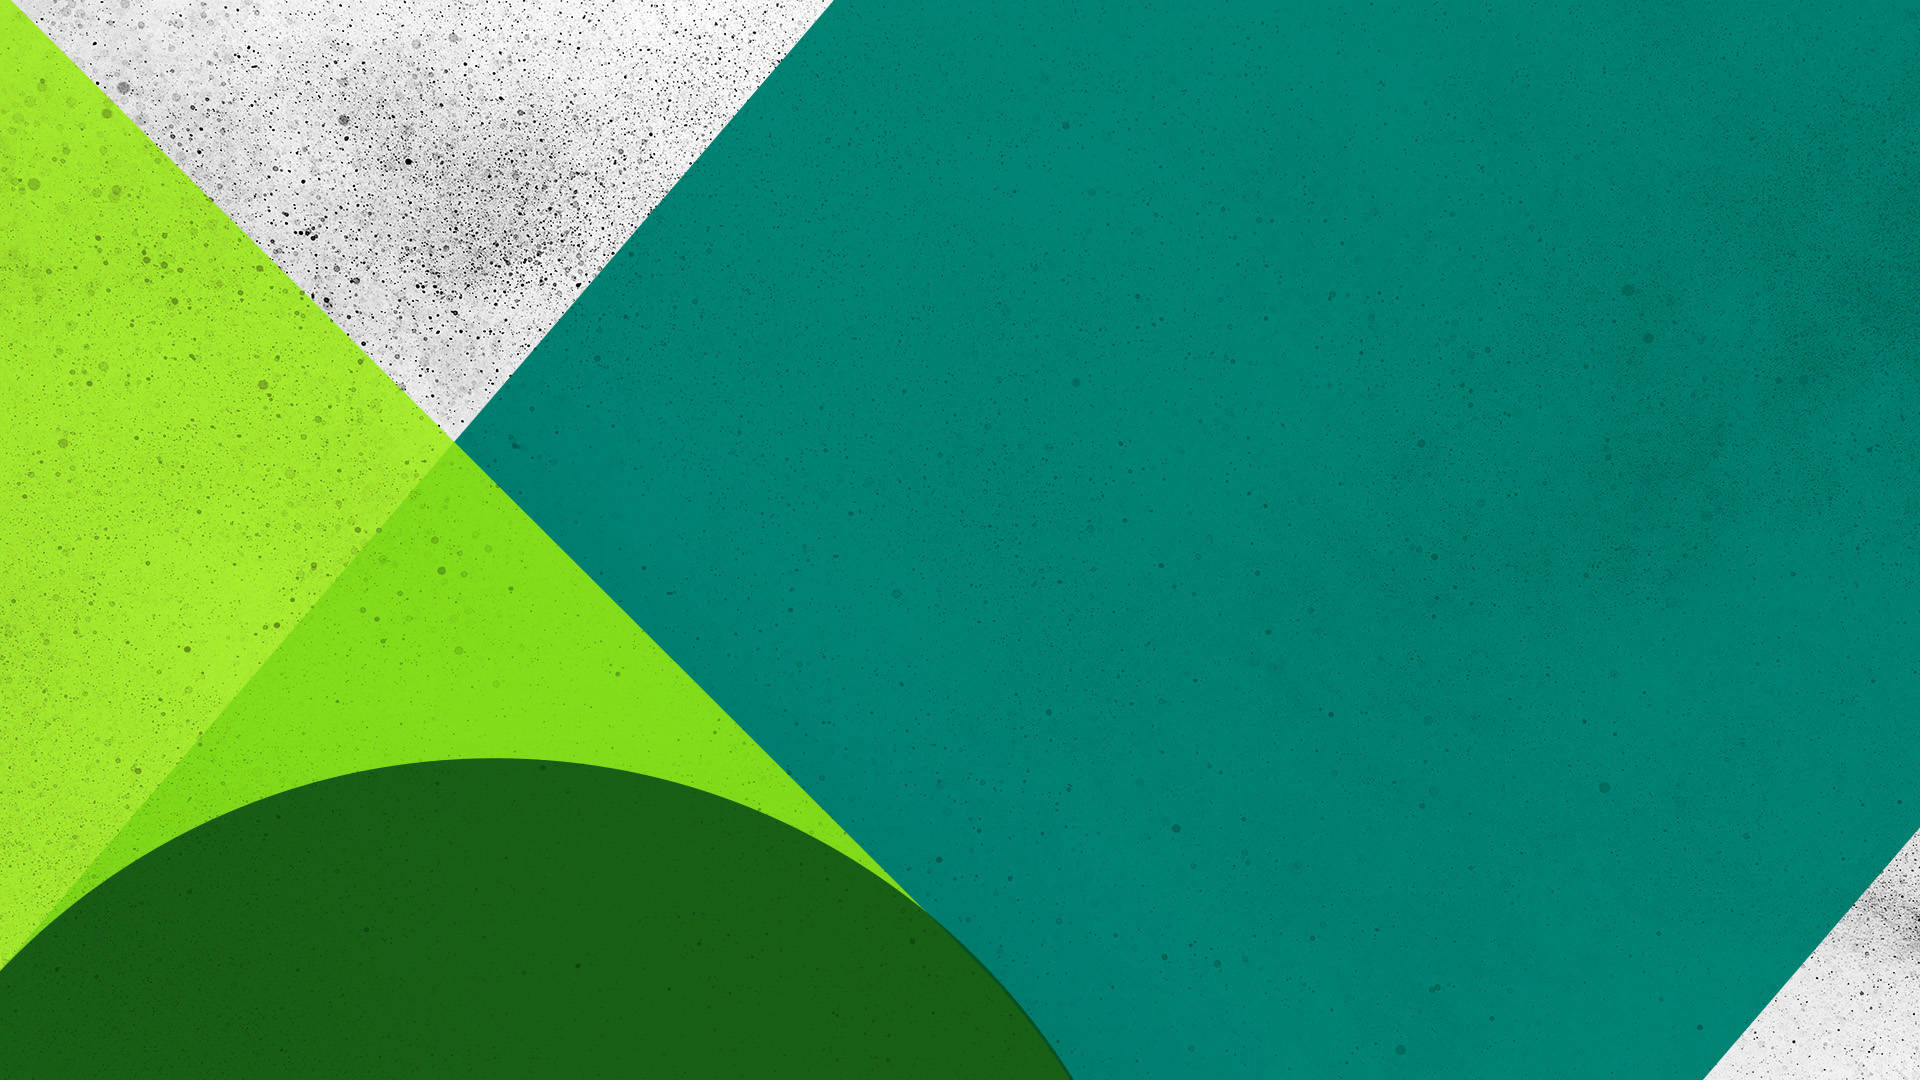 Microsoft Teams Shades Of Green Wallpaper